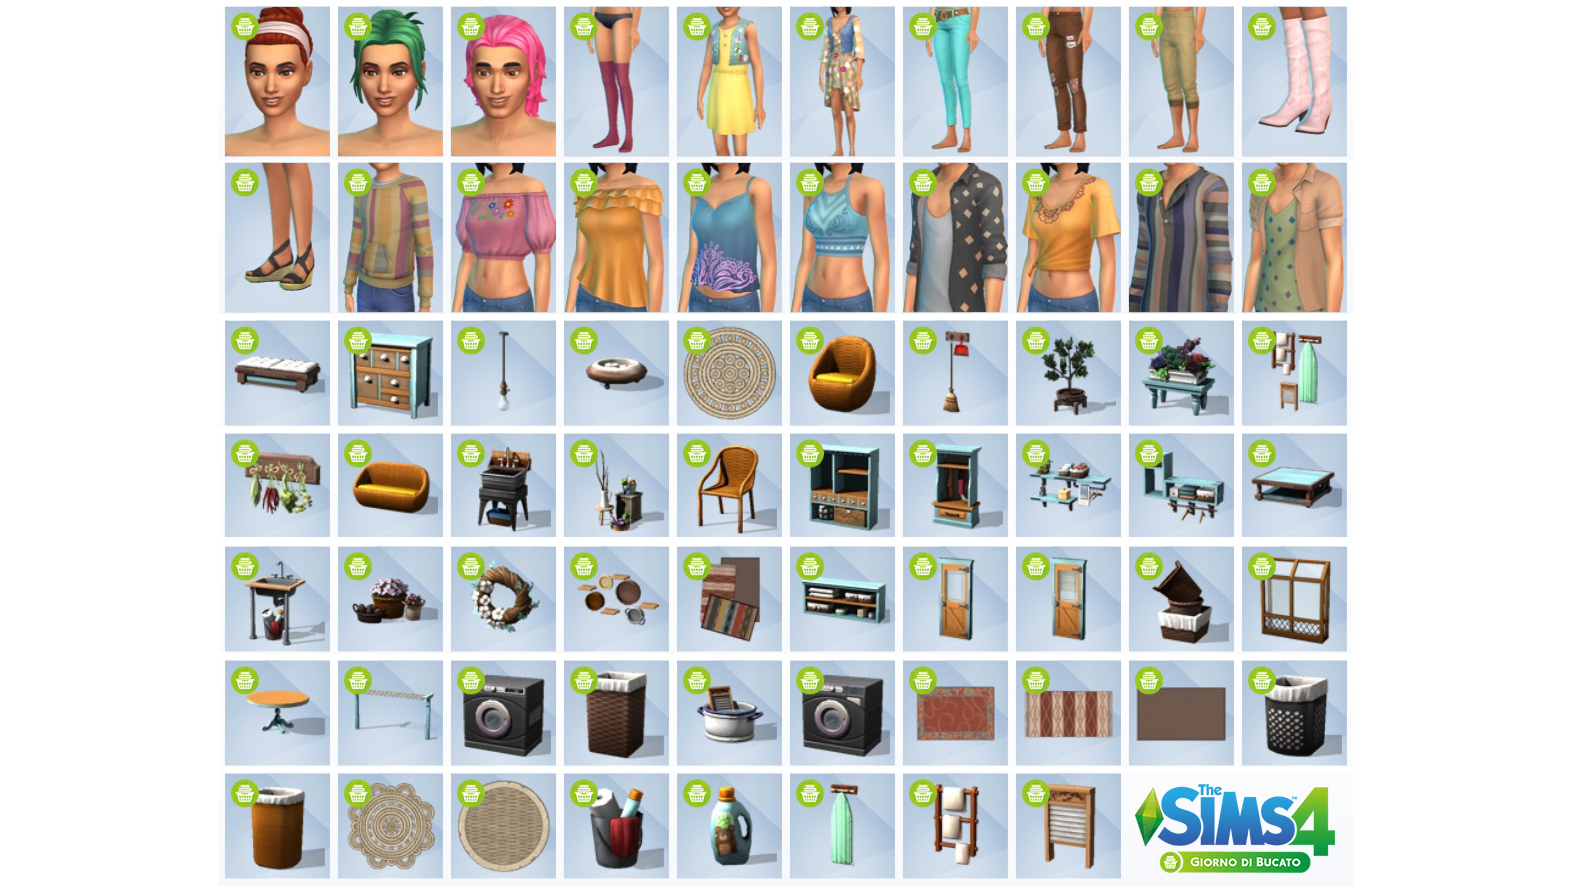 The Sims 4 Giorno di Bucato Stuff Pack